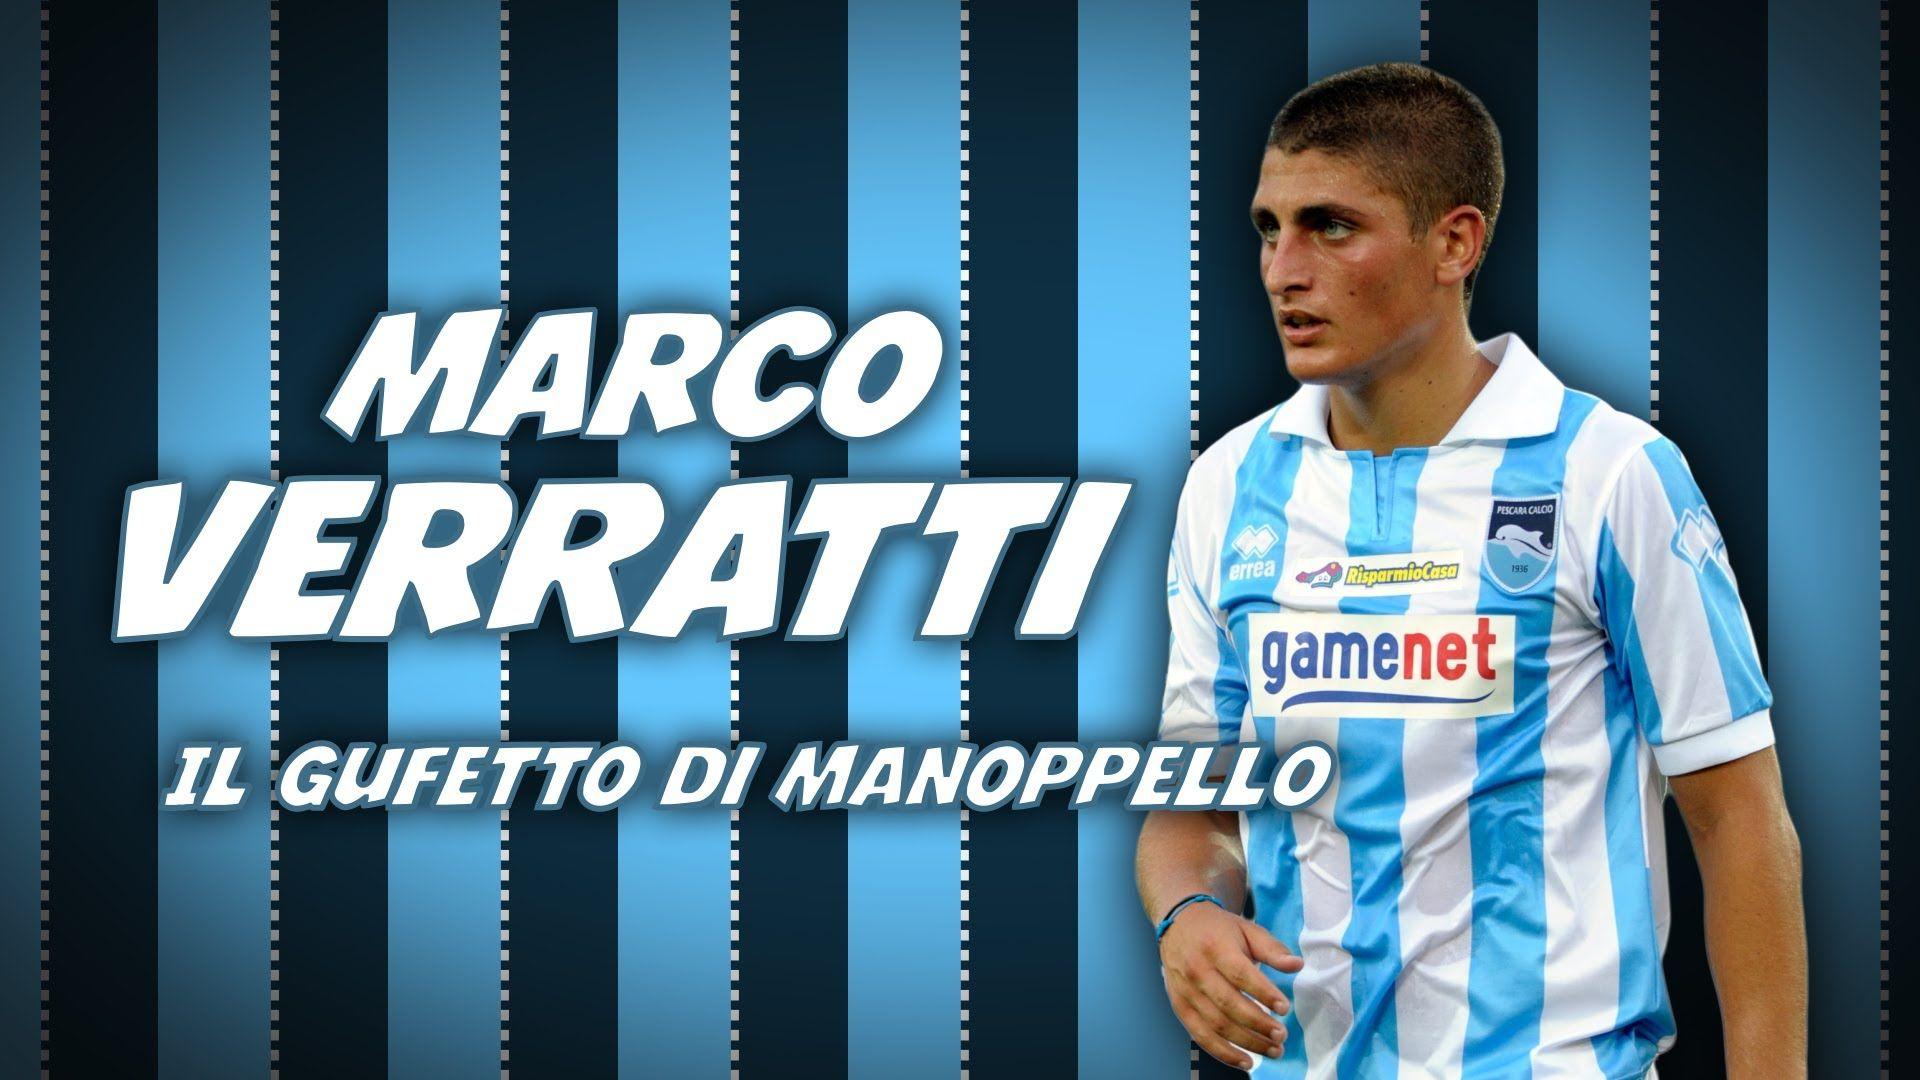 Marco Verratti Gufetto di Manoppello (HD 2012)